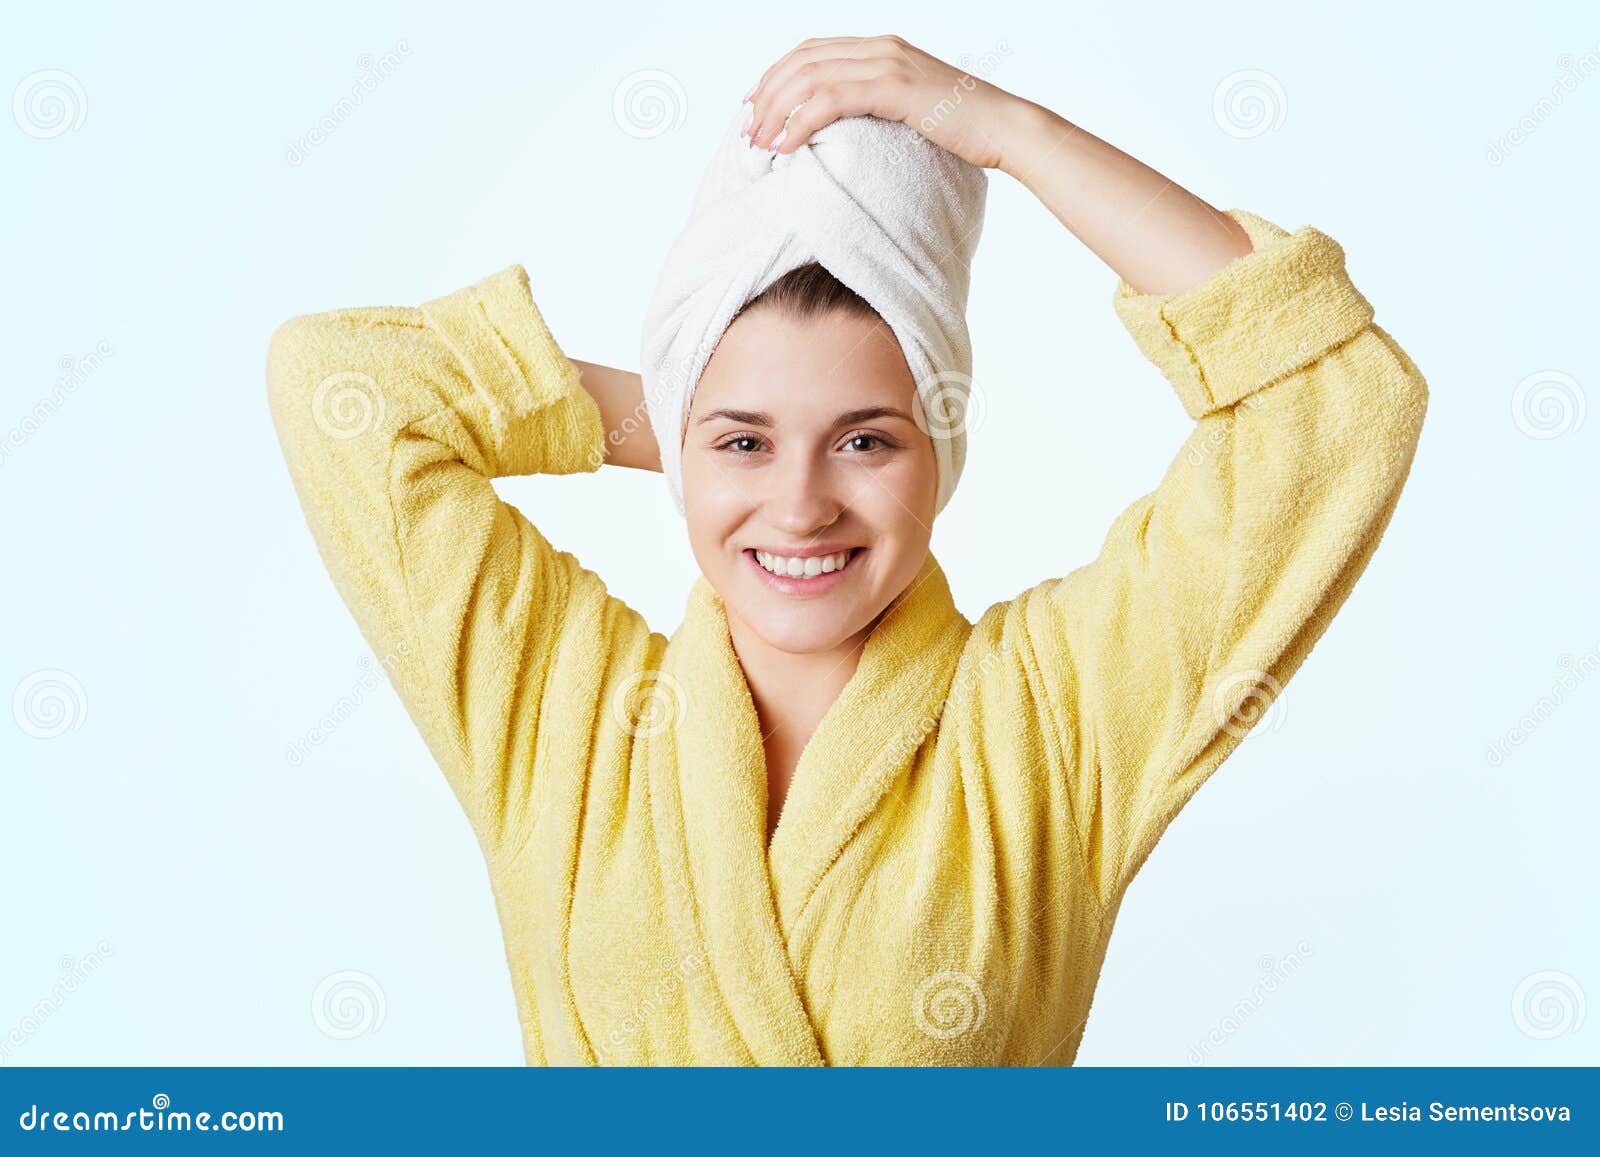 Как завязывать полотенце на голове. Полотенце на голове. Девушка с полотенцем на голове. Человек в полотенце. Человек с полотенцем на голове.